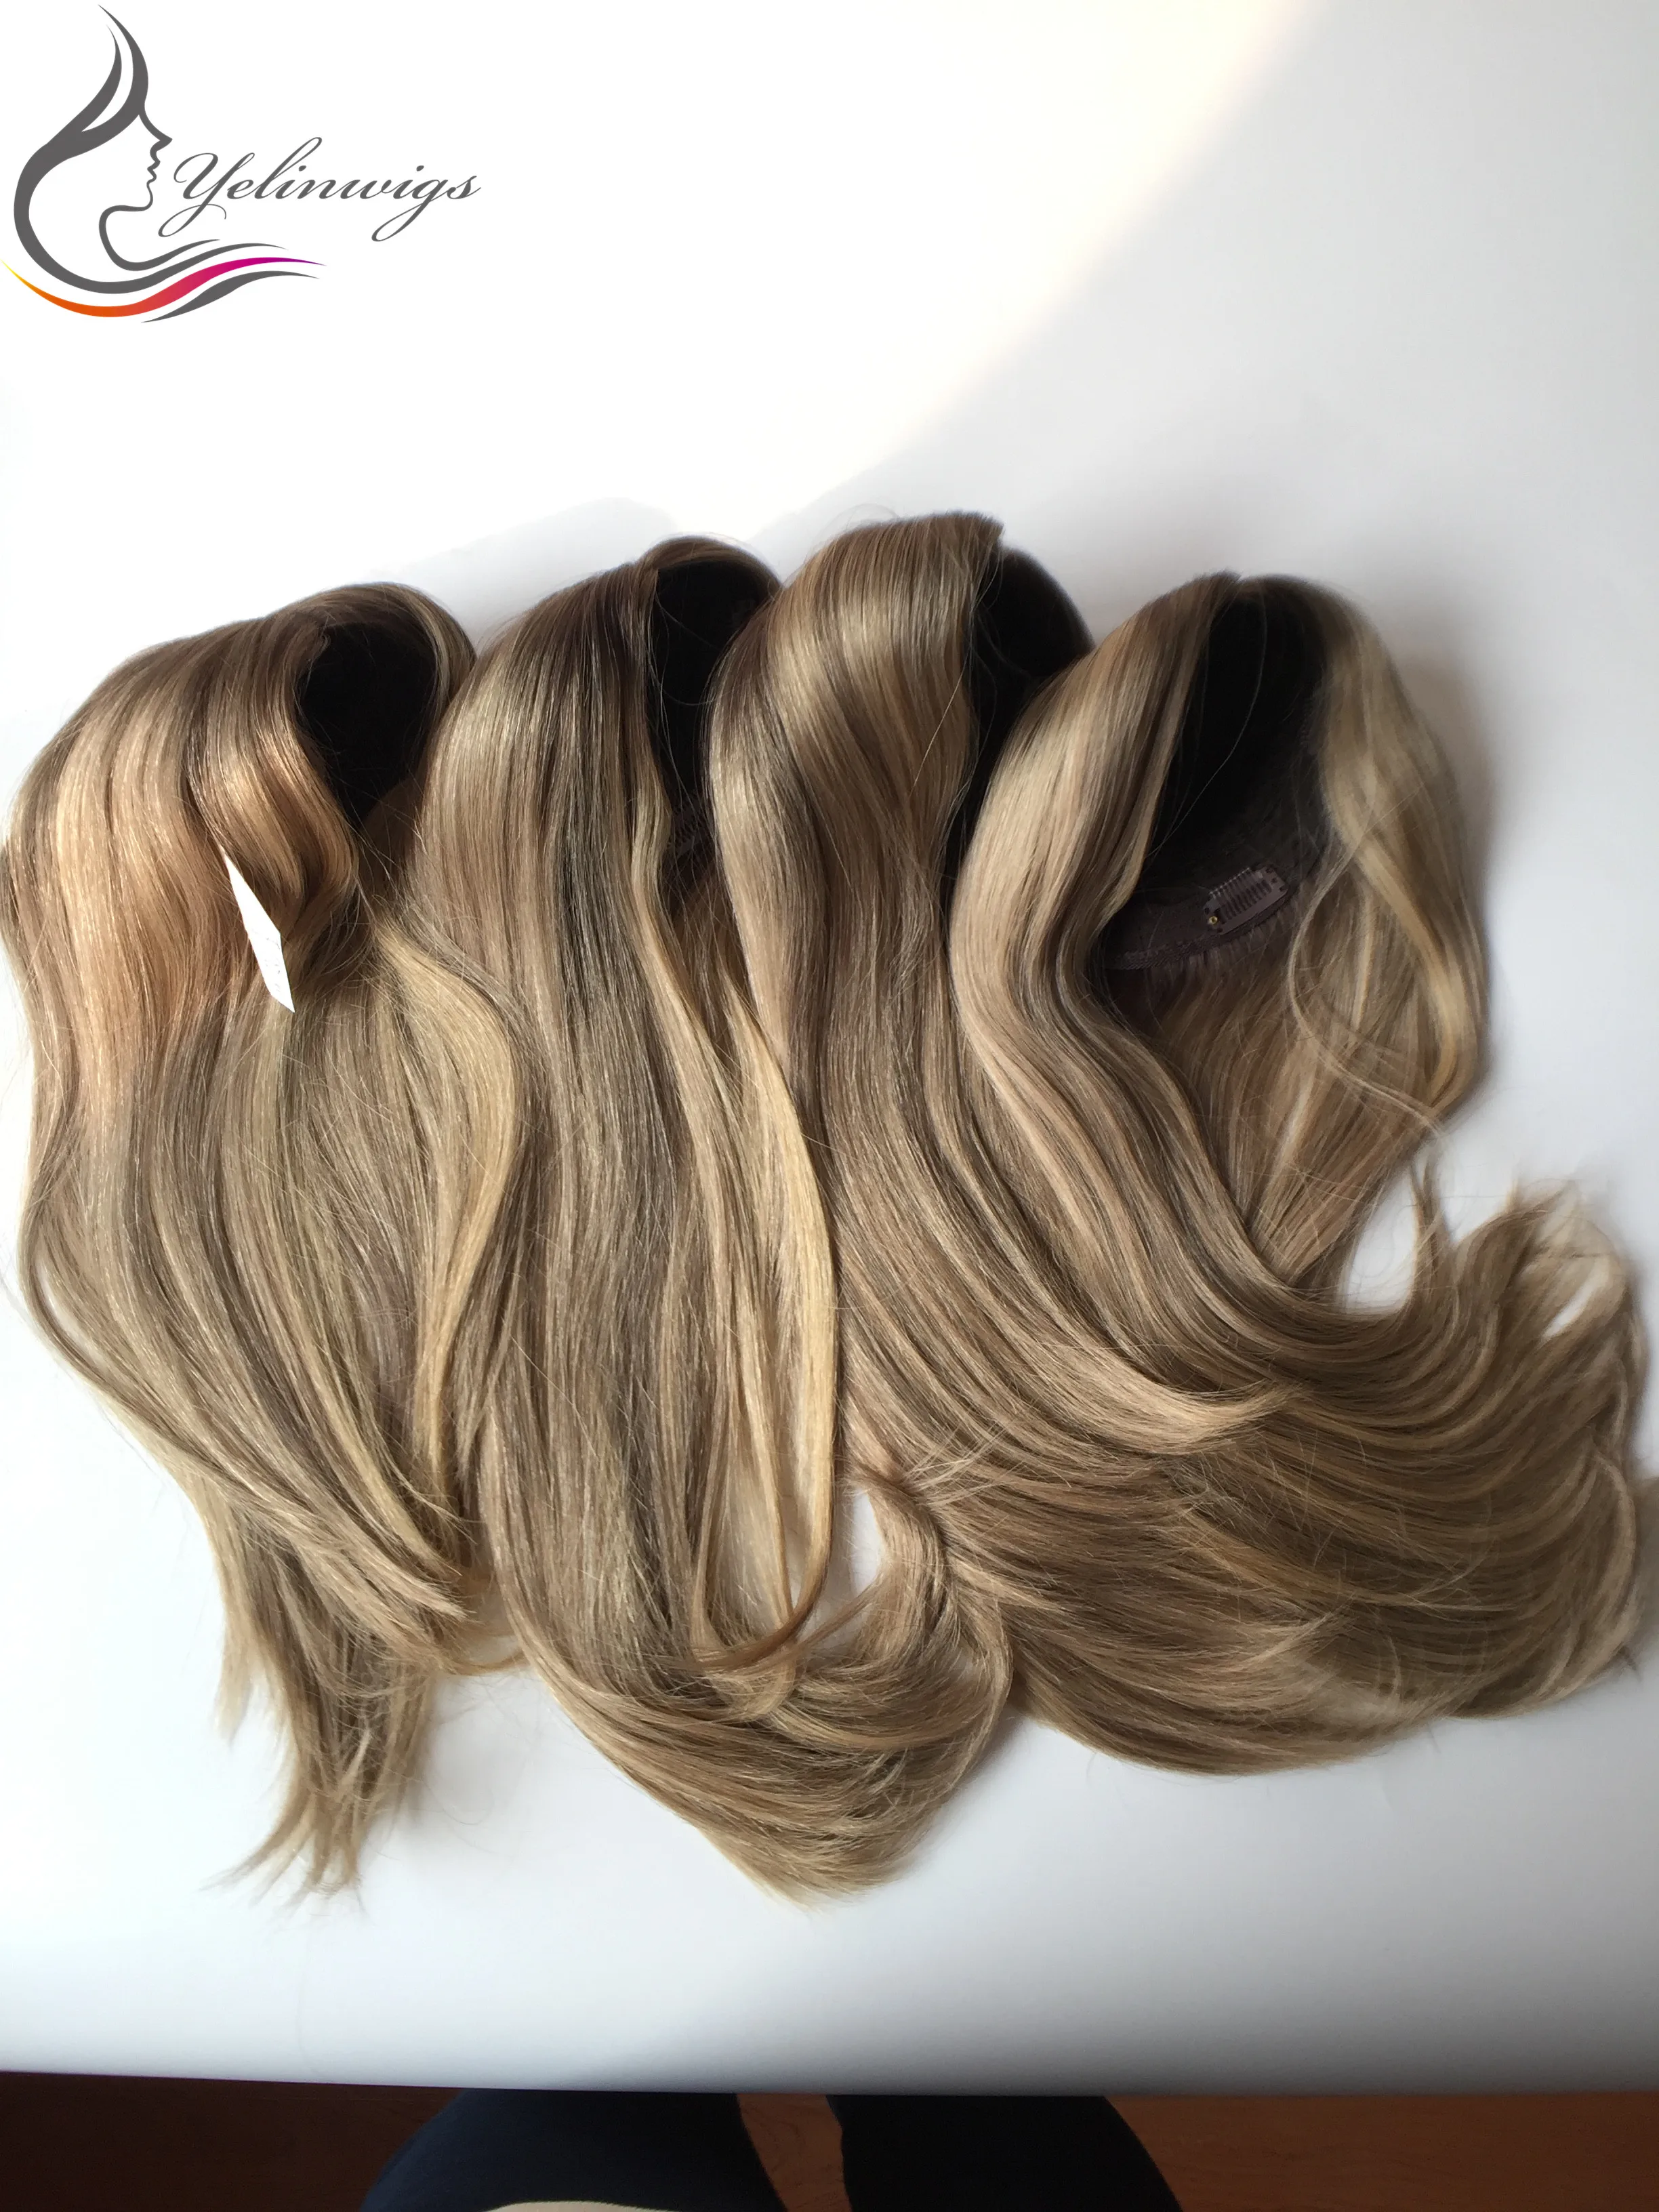 Новые европейские волосы иудейские верхушки для волос высококачественные европейские волосы Kippah осенние Кошерные волосы